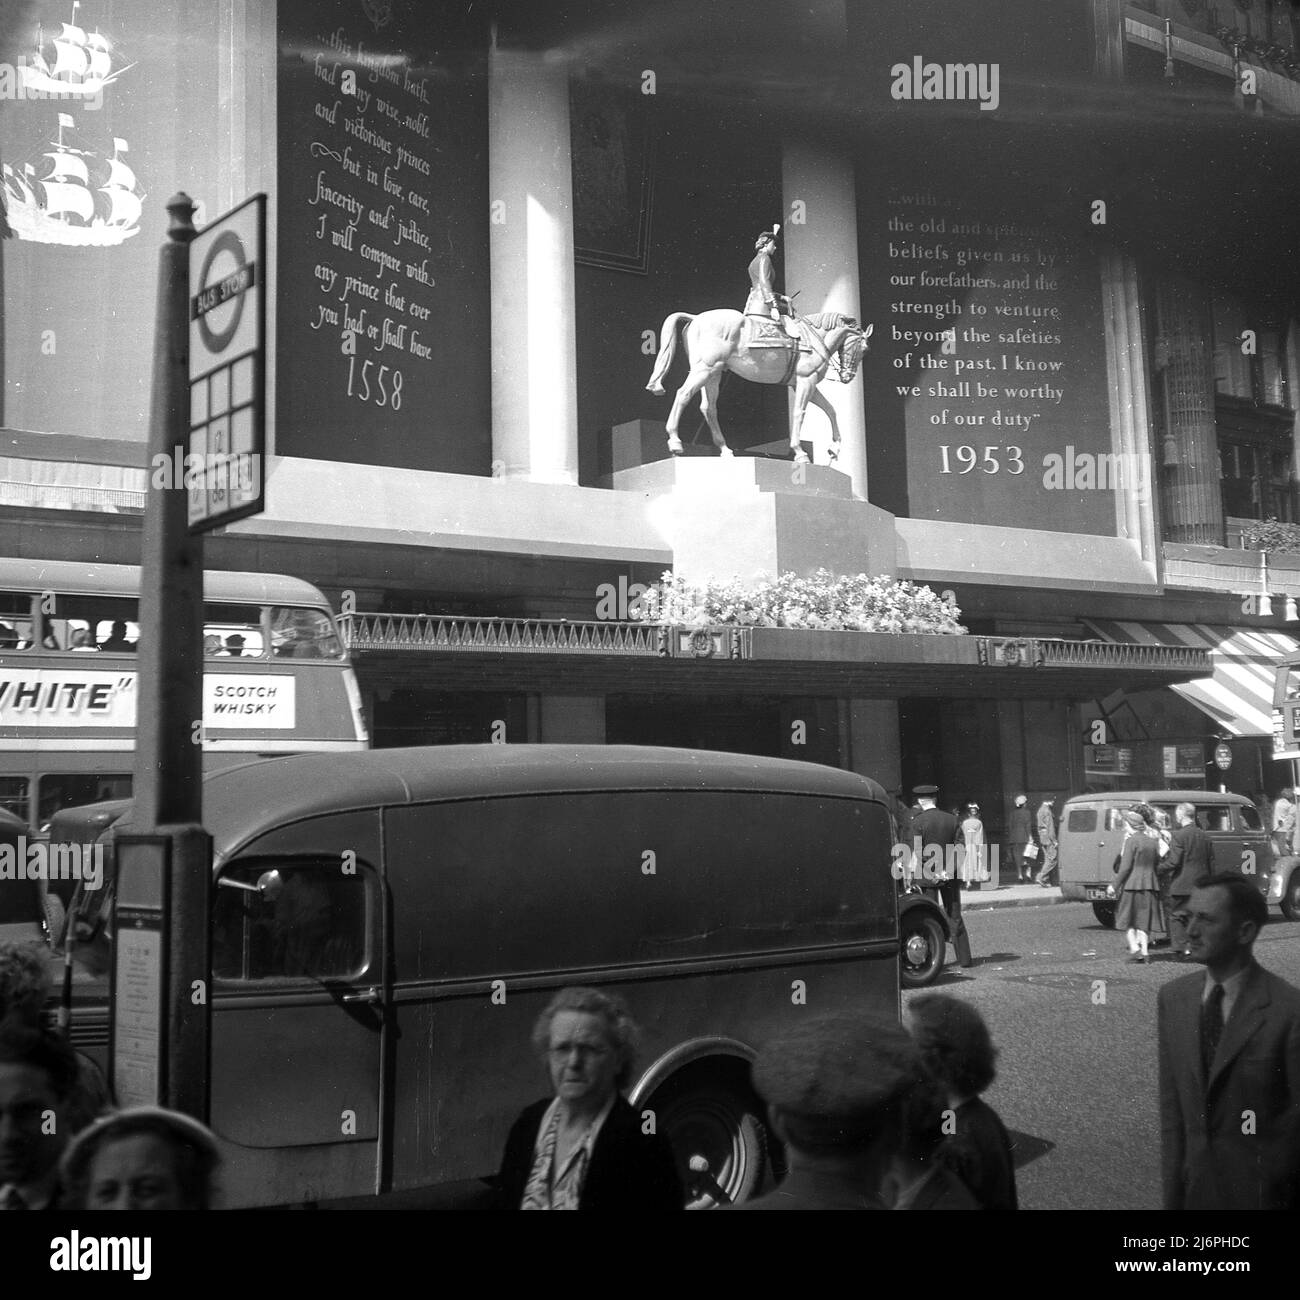 1953, Historical, Oxford Street, Londra, Inghilterra, UK, una mostra esterna su un grande magazzino che celebra l'incoronazione della regina Elisabetta II al trono. La cosiddetta decorazione dell'incoronazione Selfridges era una statua equestre della regina Elisabetta II sul suo cavallo 'Winston'. Foto Stock